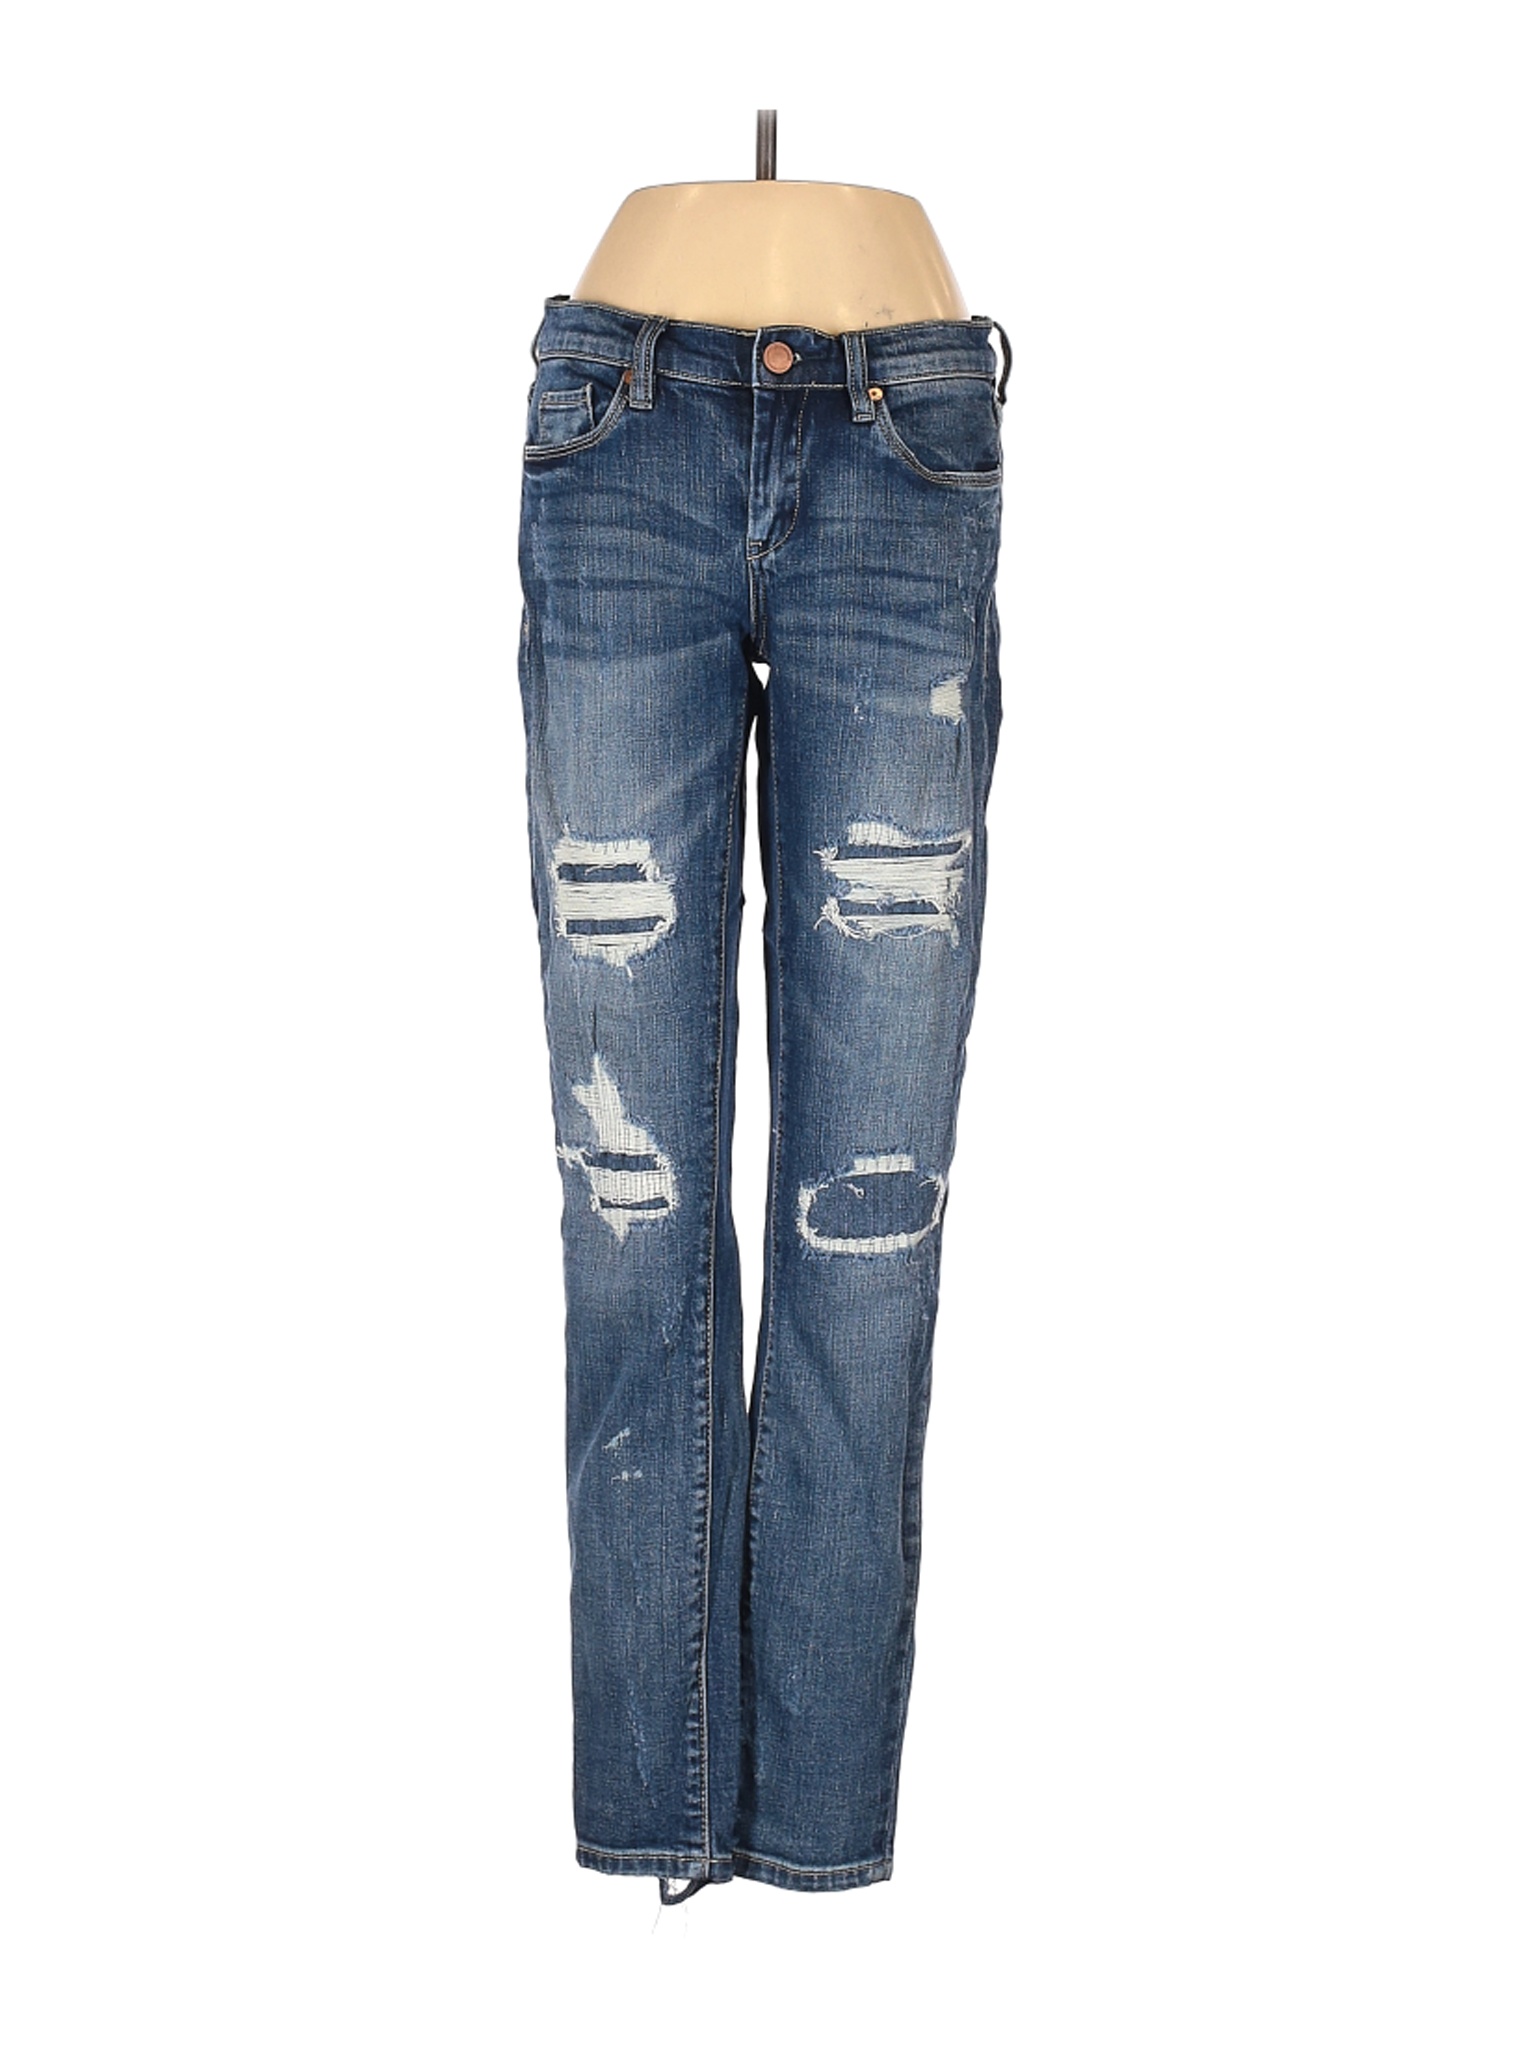 Blank NYC Women Blue Jeans 25W | eBay